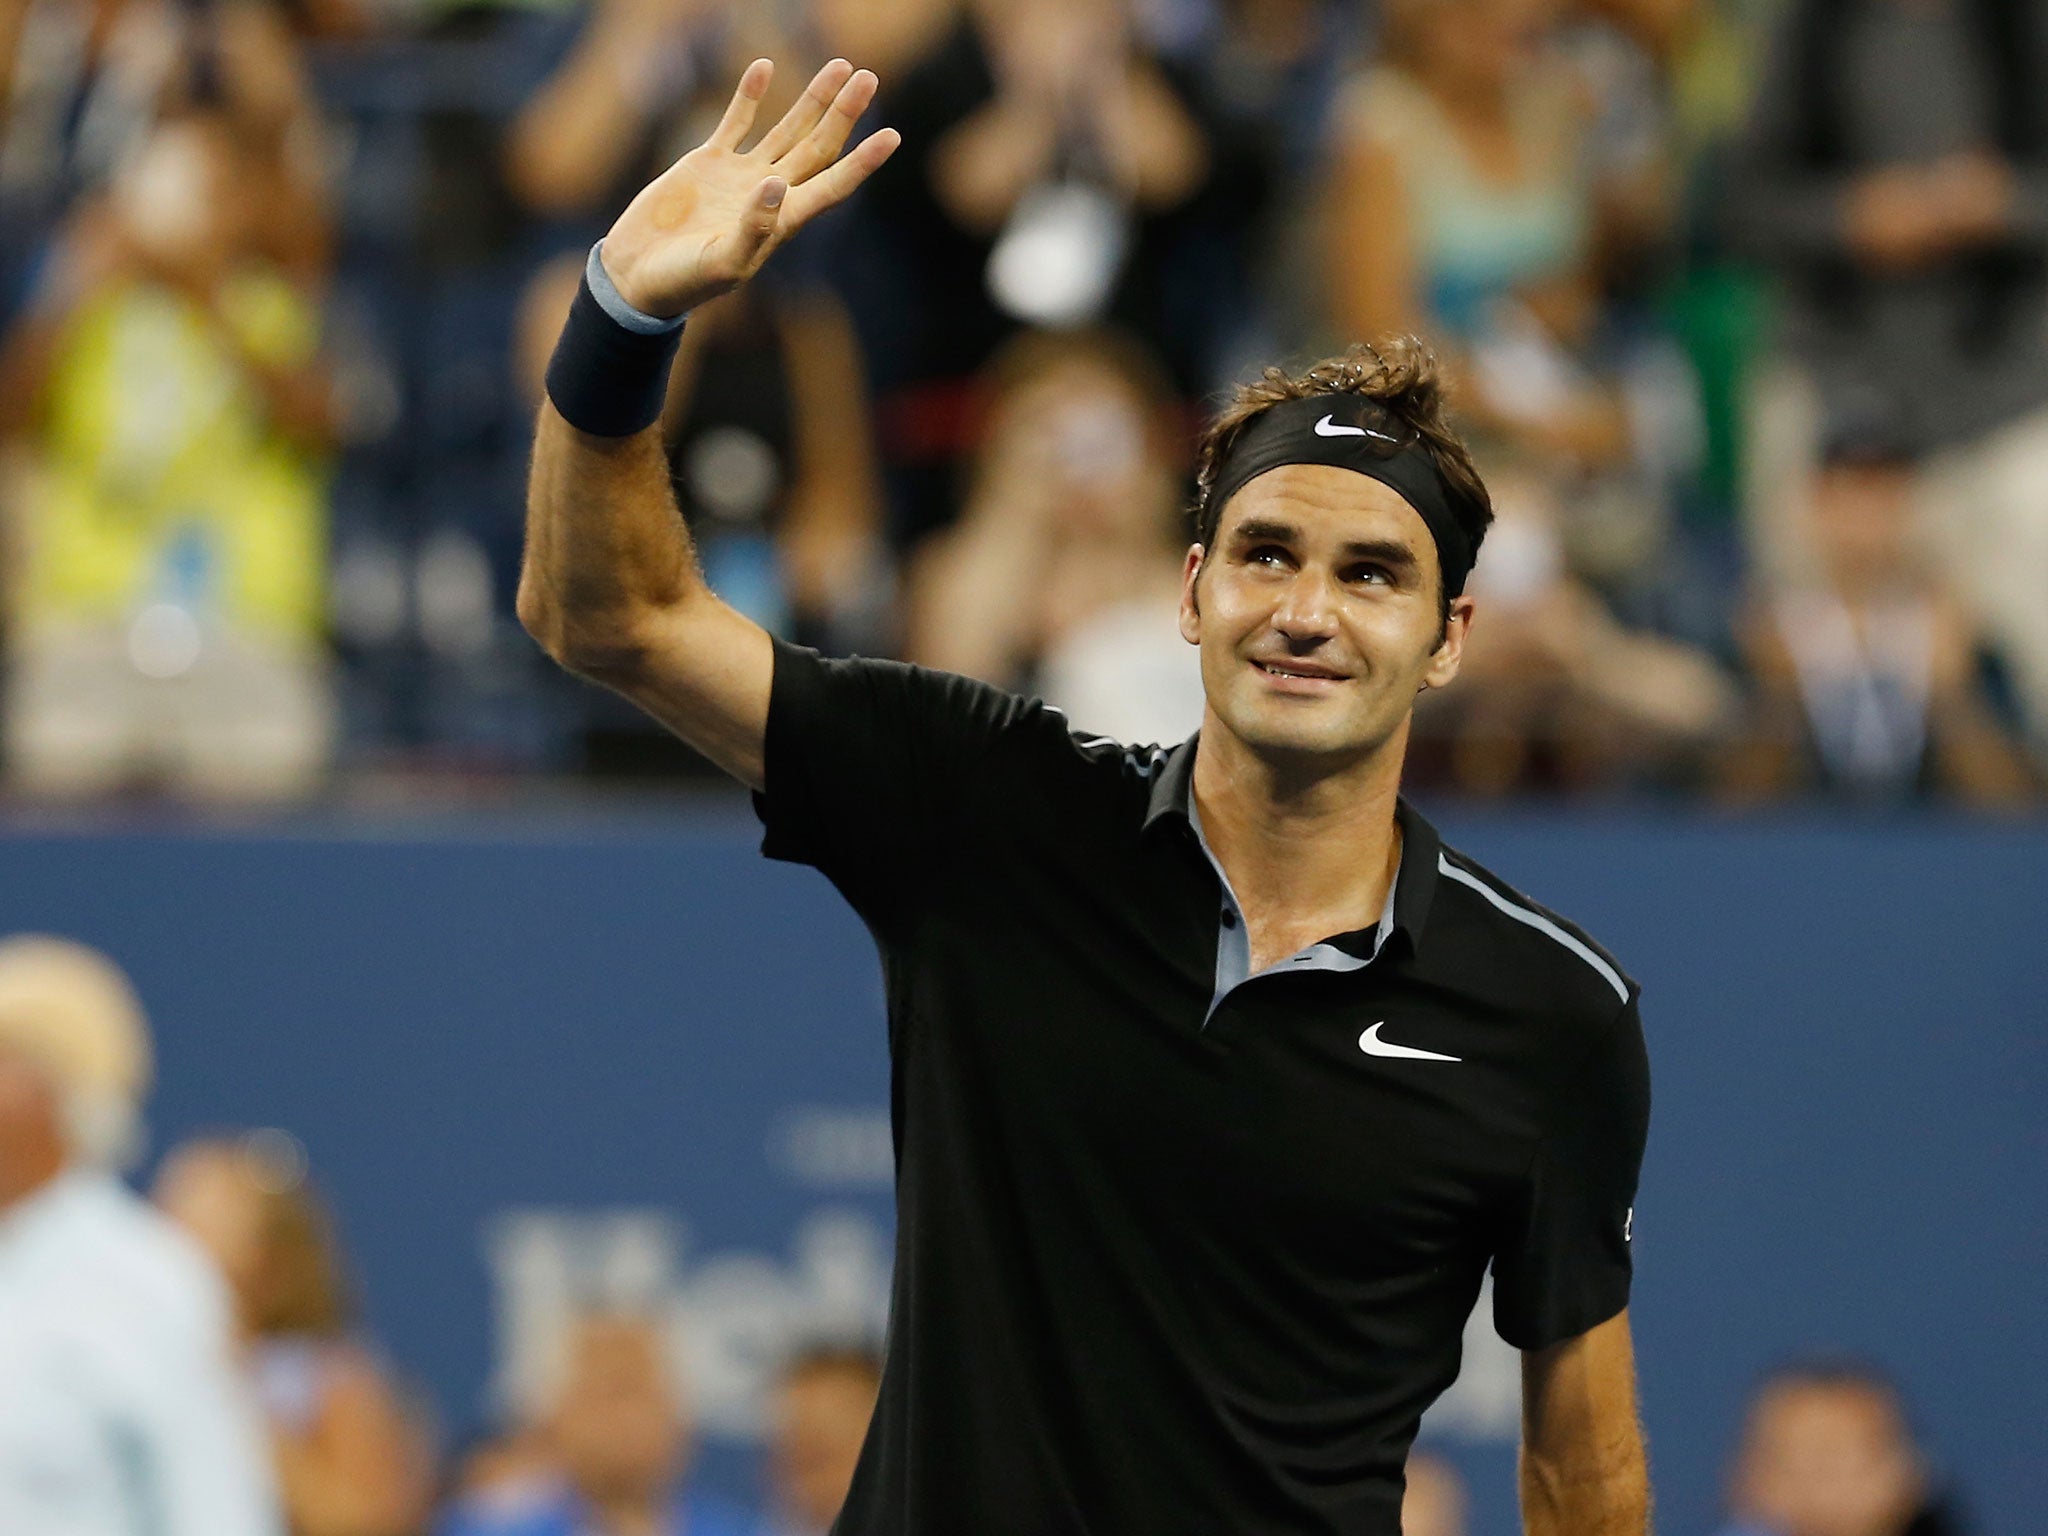 Roger Federer at the 2014 US Open.